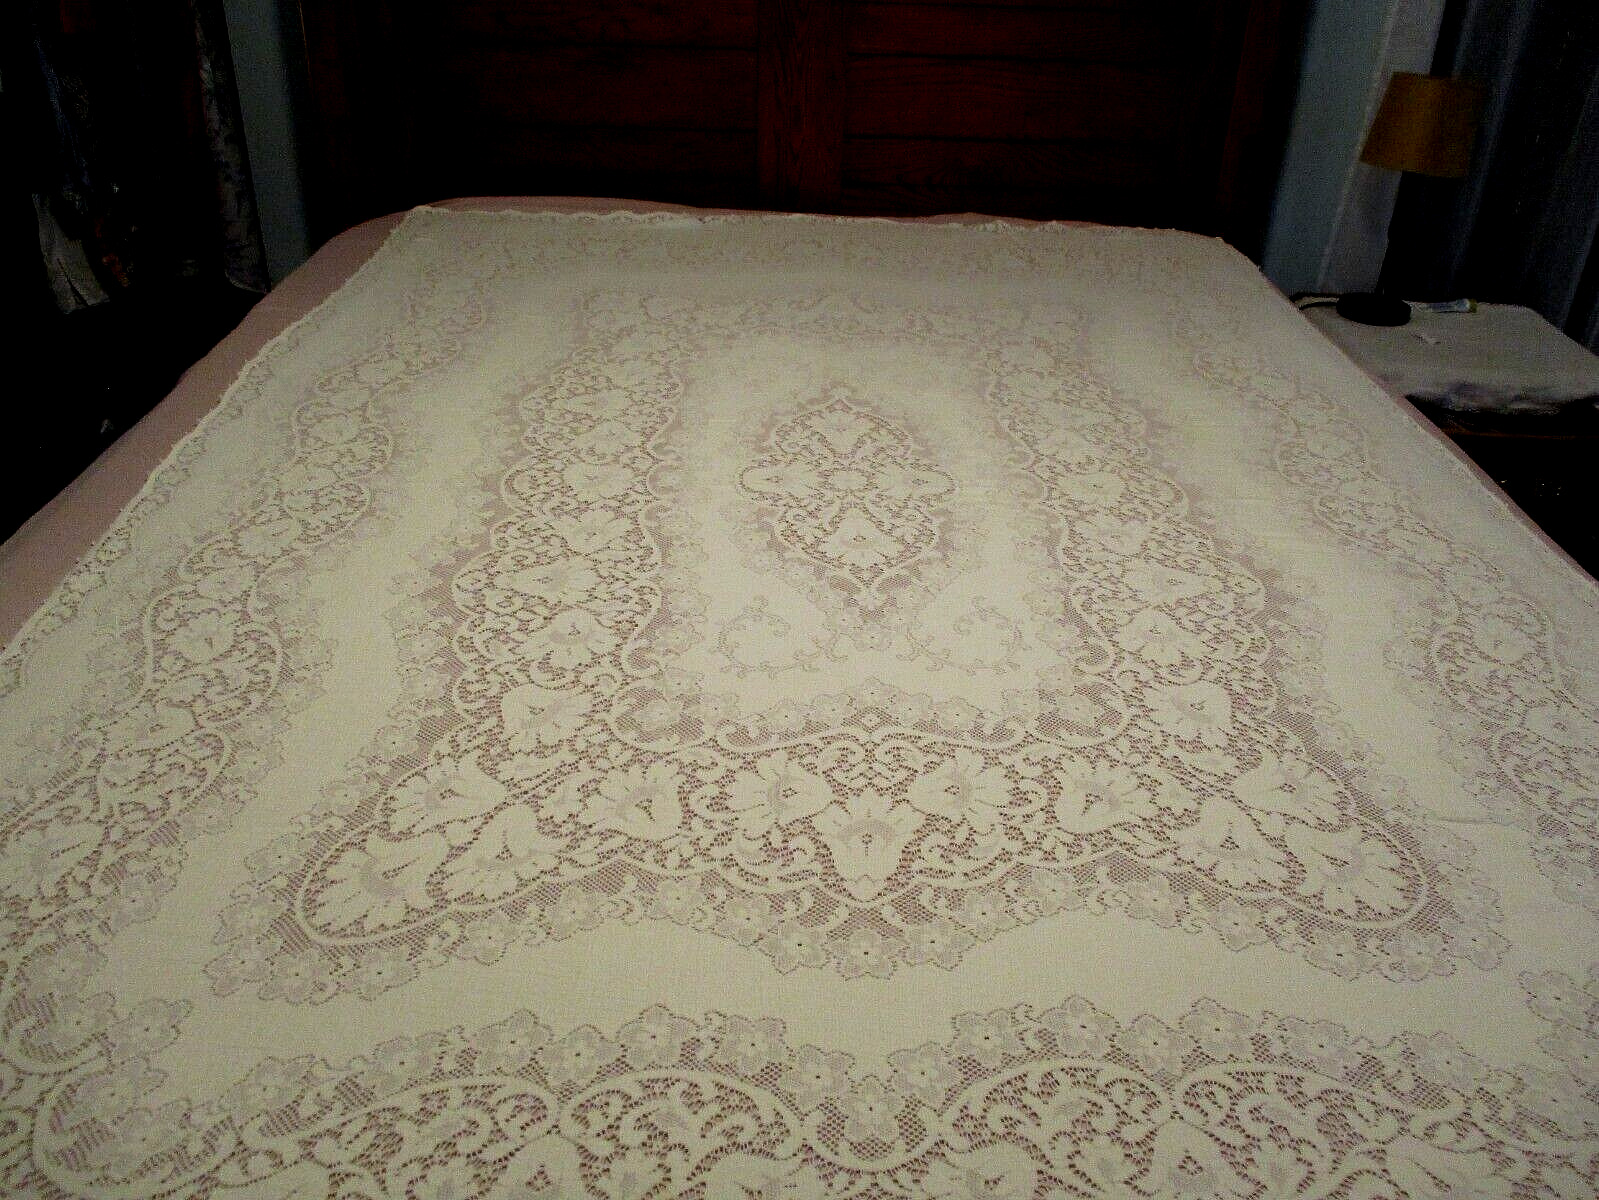 Vintage Quaker100% COTTON Lace tablecloth  WHITE  floral theme 79 x 53 VGC